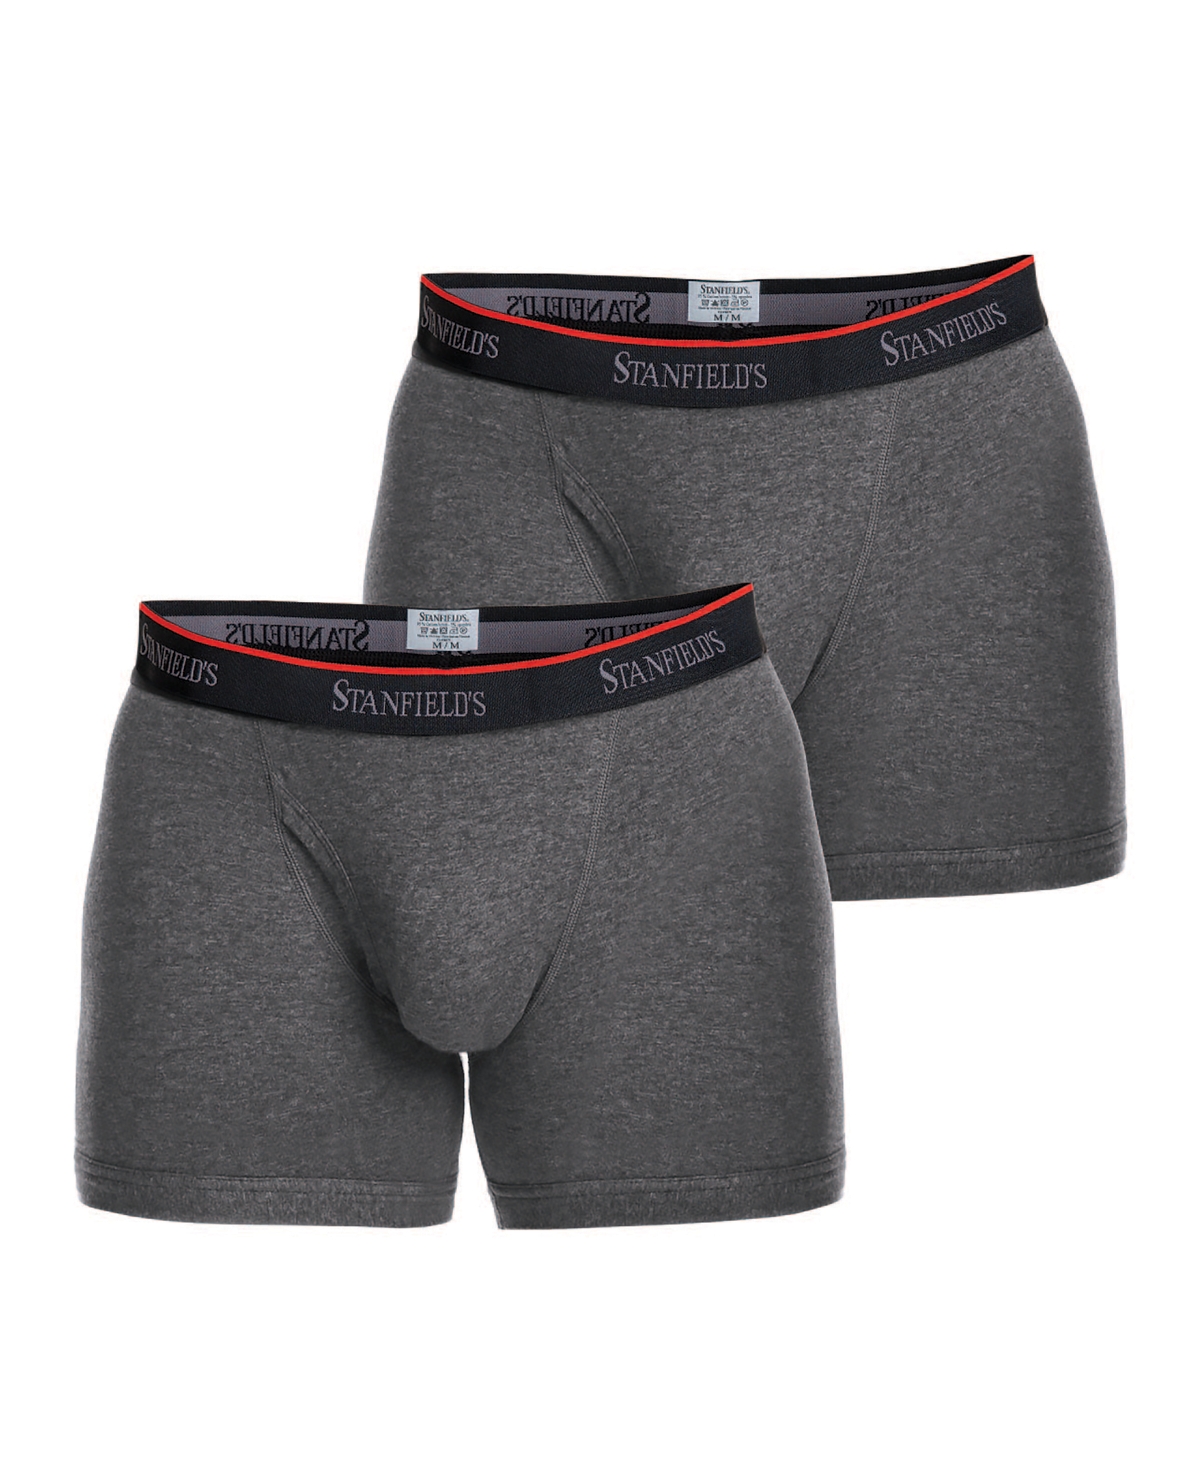 Cotton Stretch Men's 2 Pack Boxer Brief Underwear - Graphite